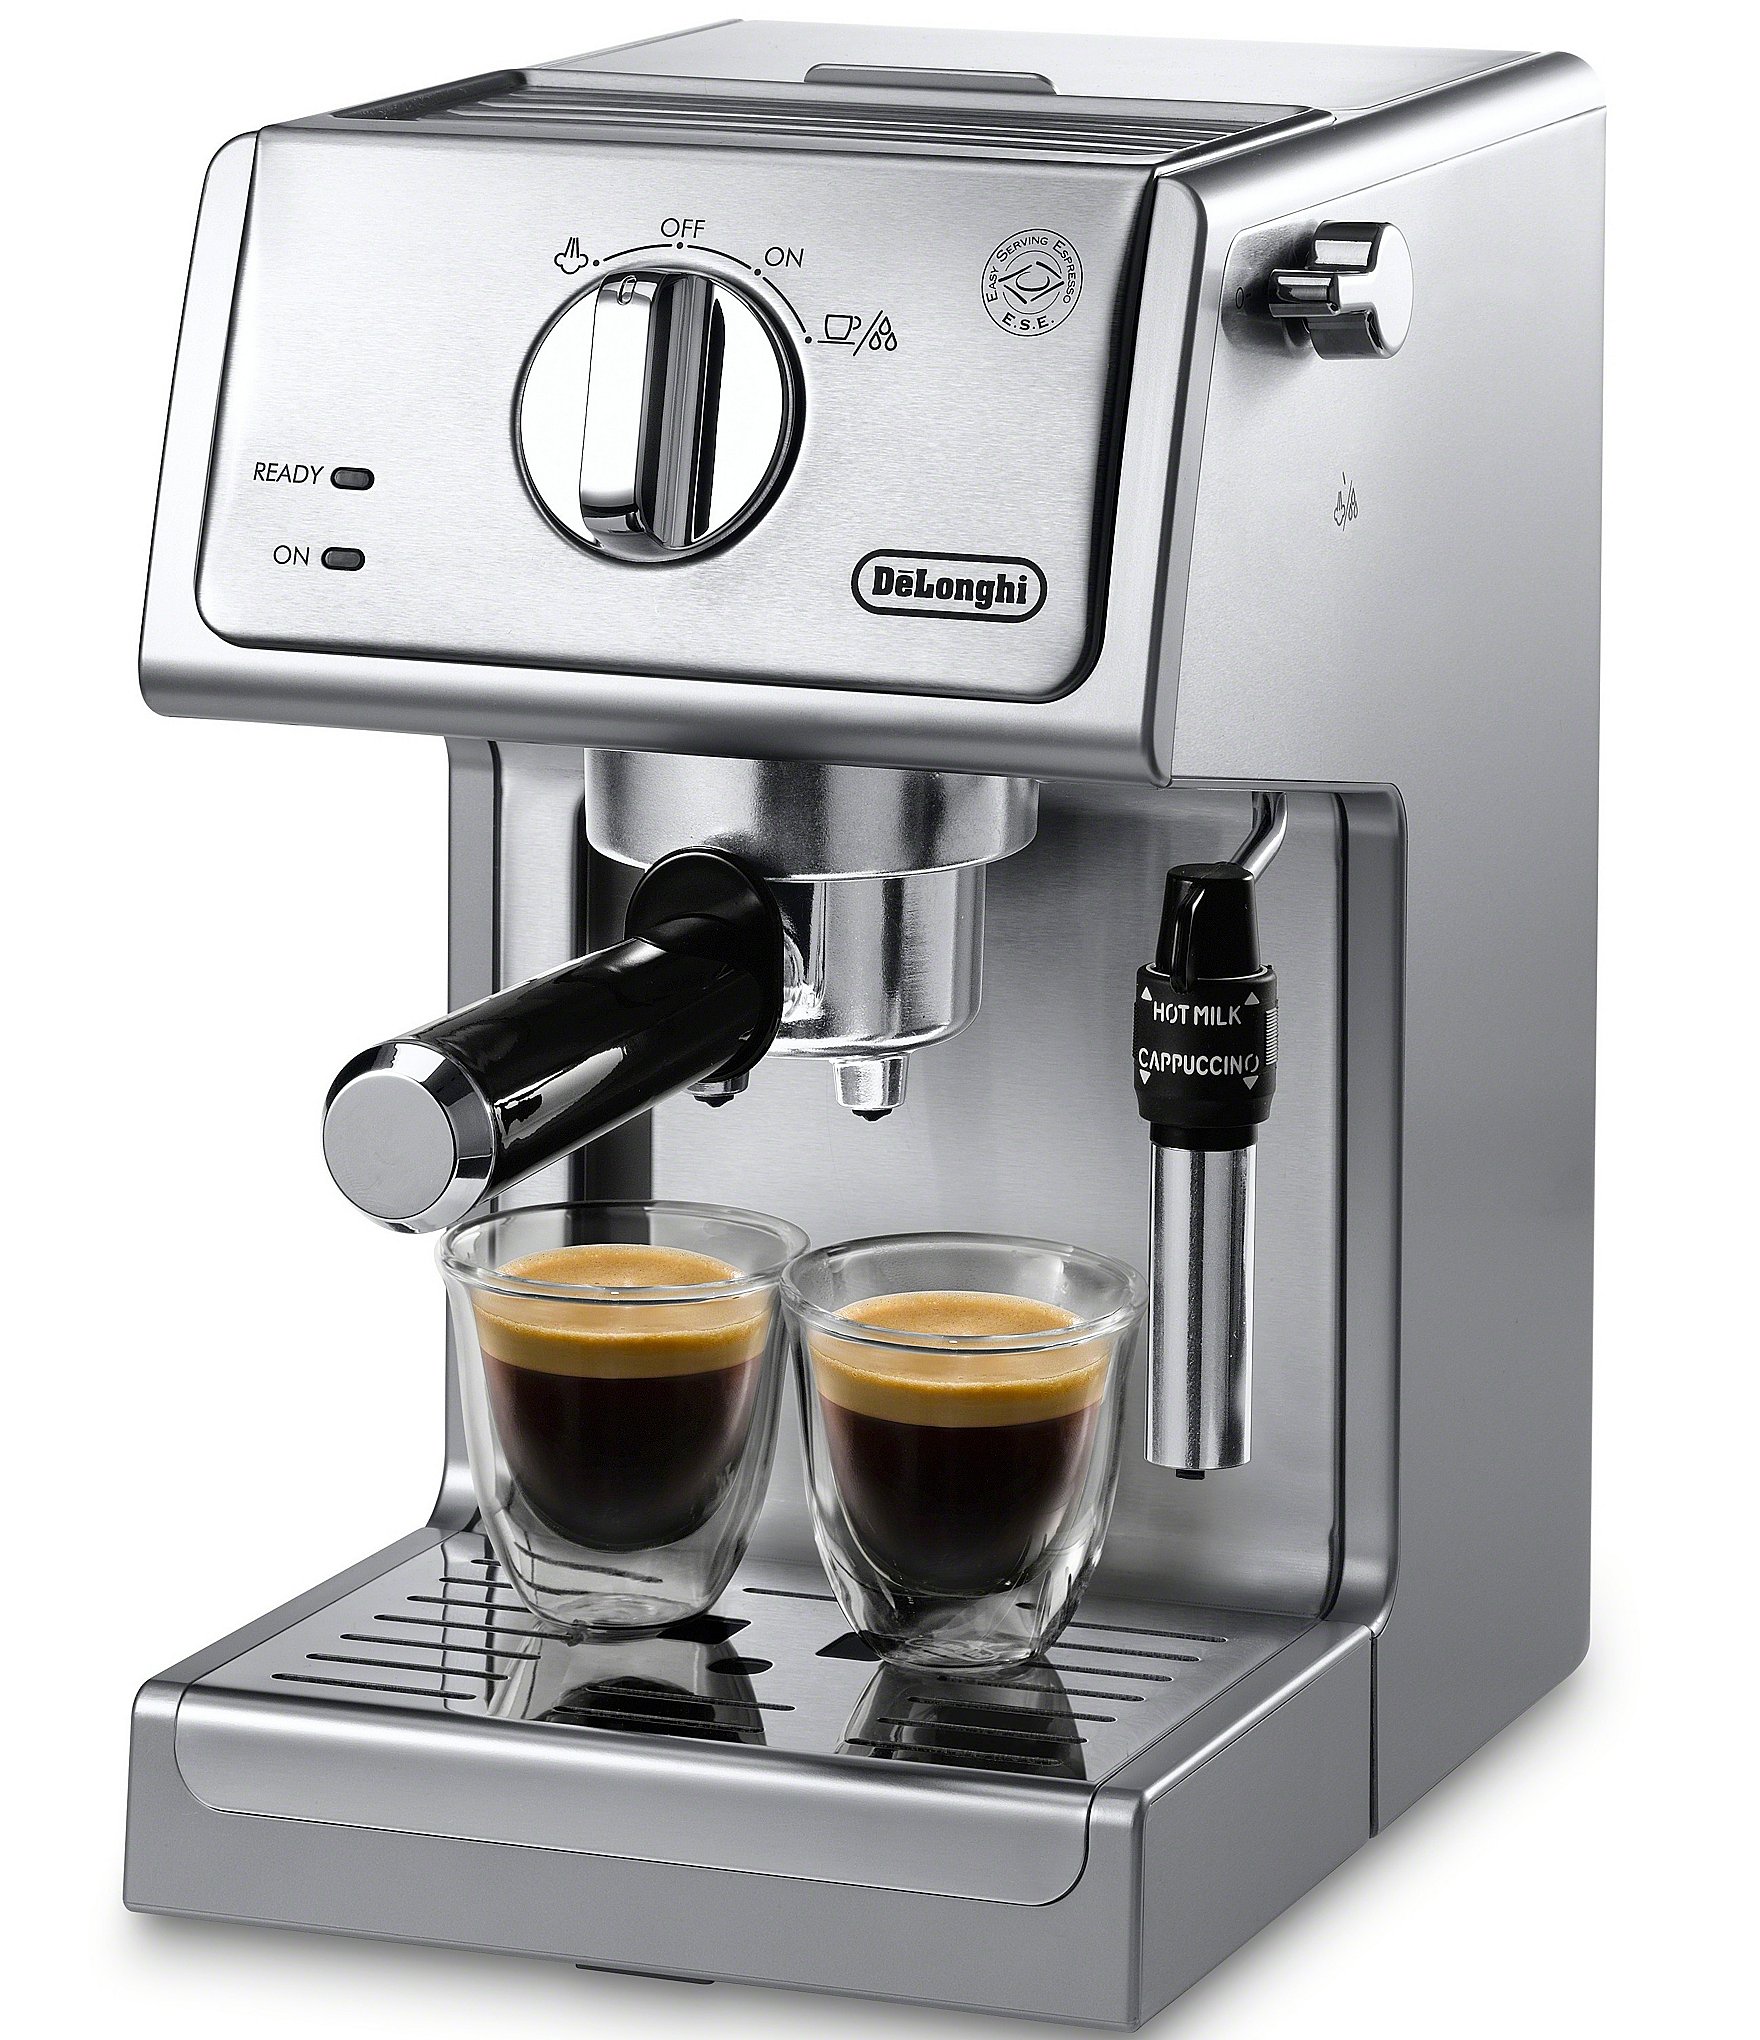 Capresso EC100 Espresso and Cappuccino Machine, Black/Silver